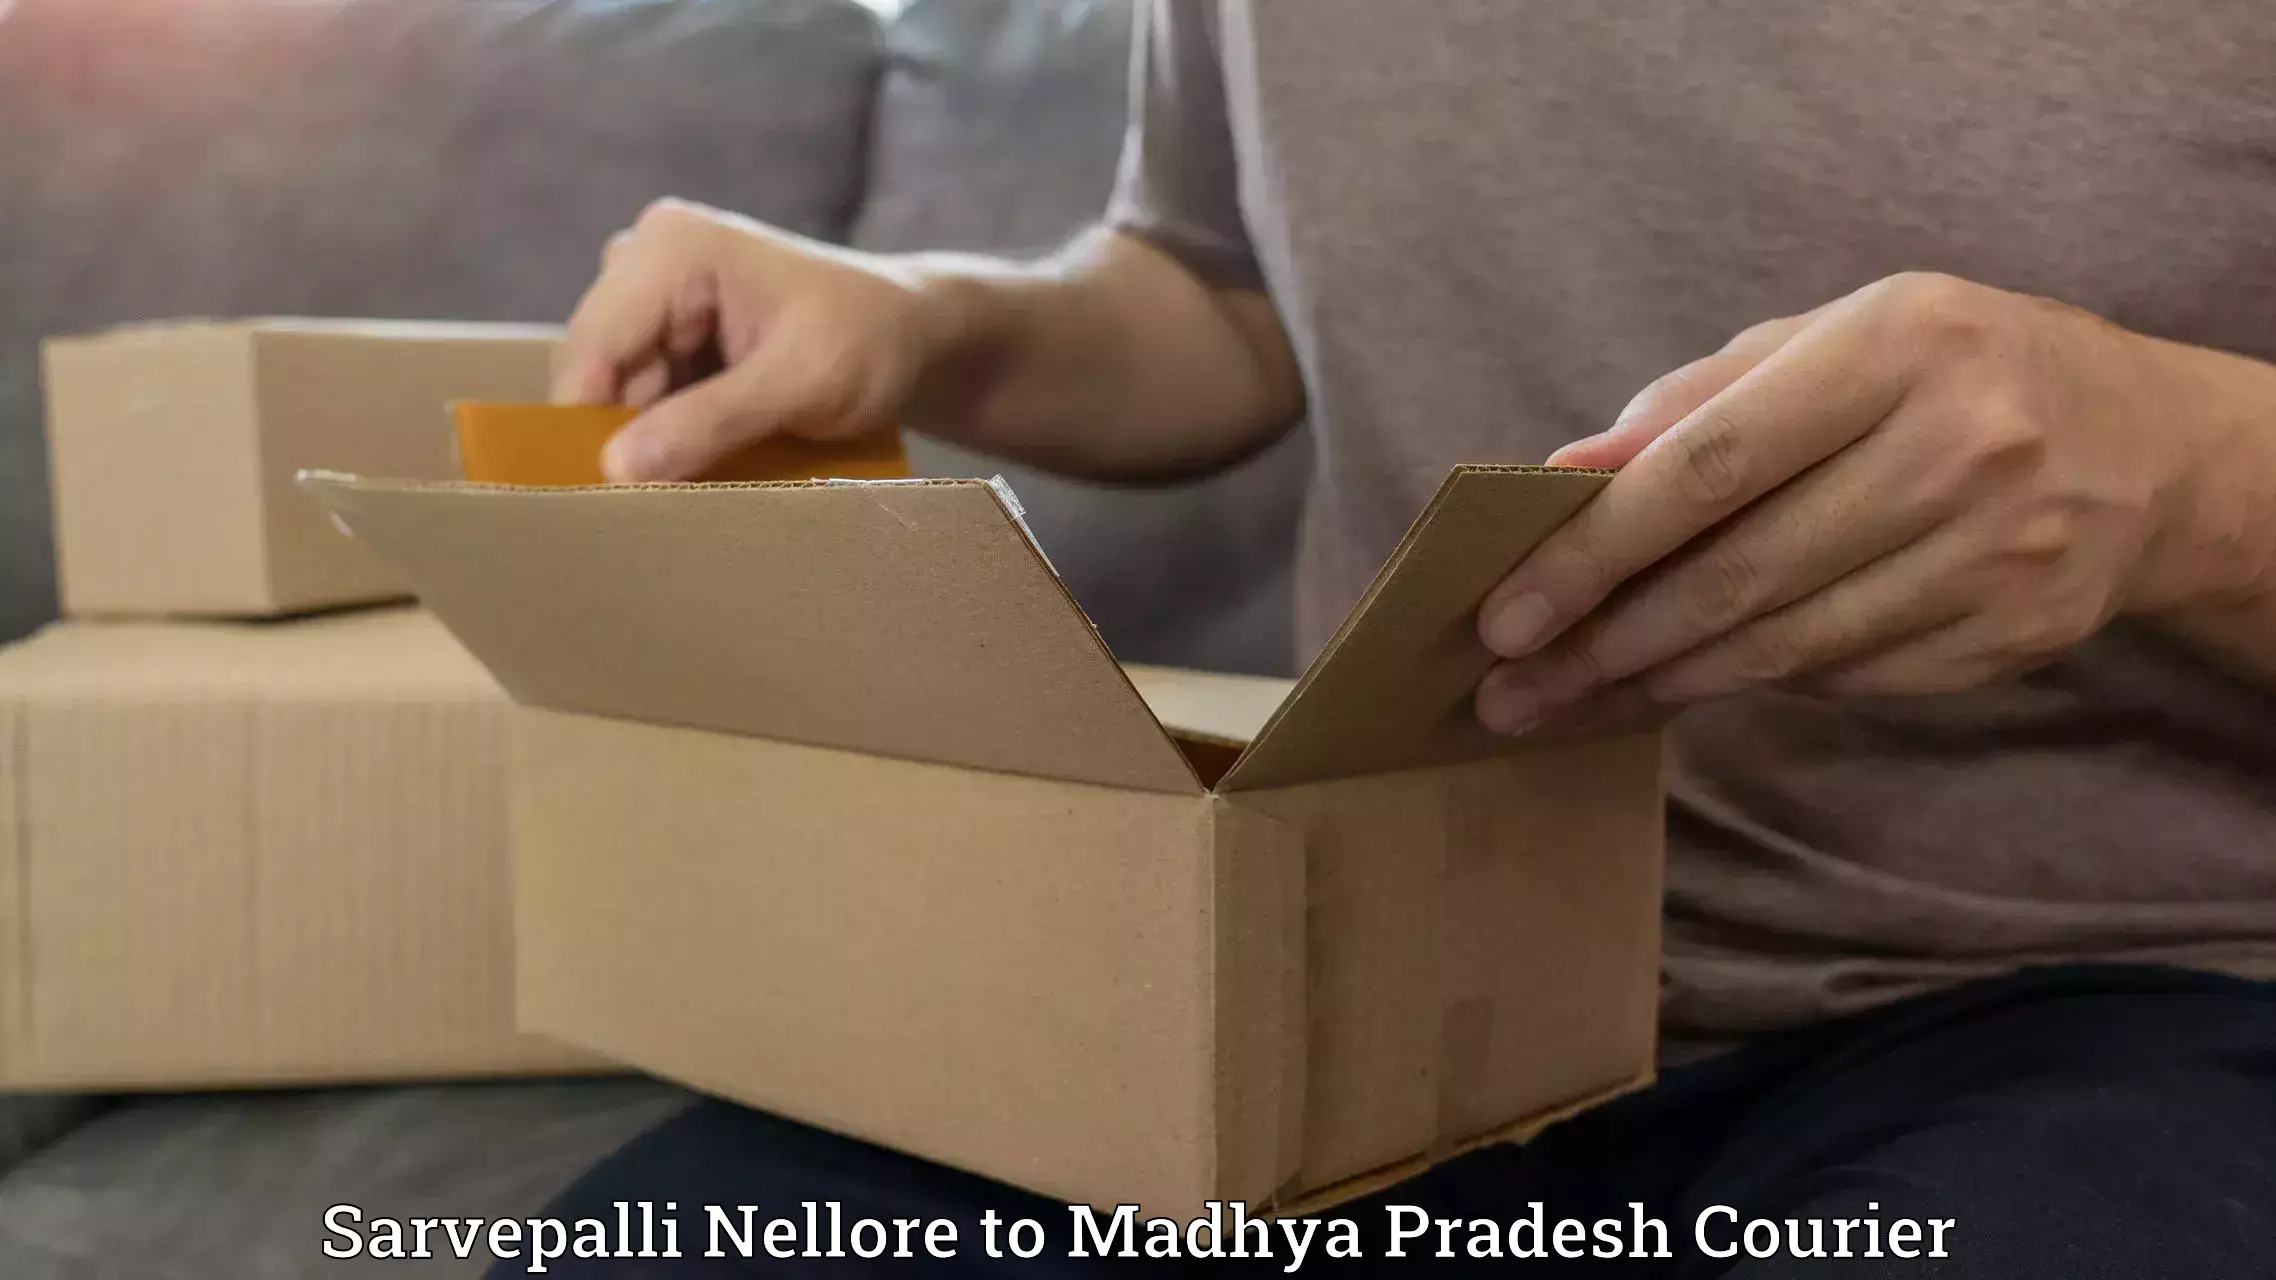 Express mail solutions Sarvepalli Nellore to Vidisha